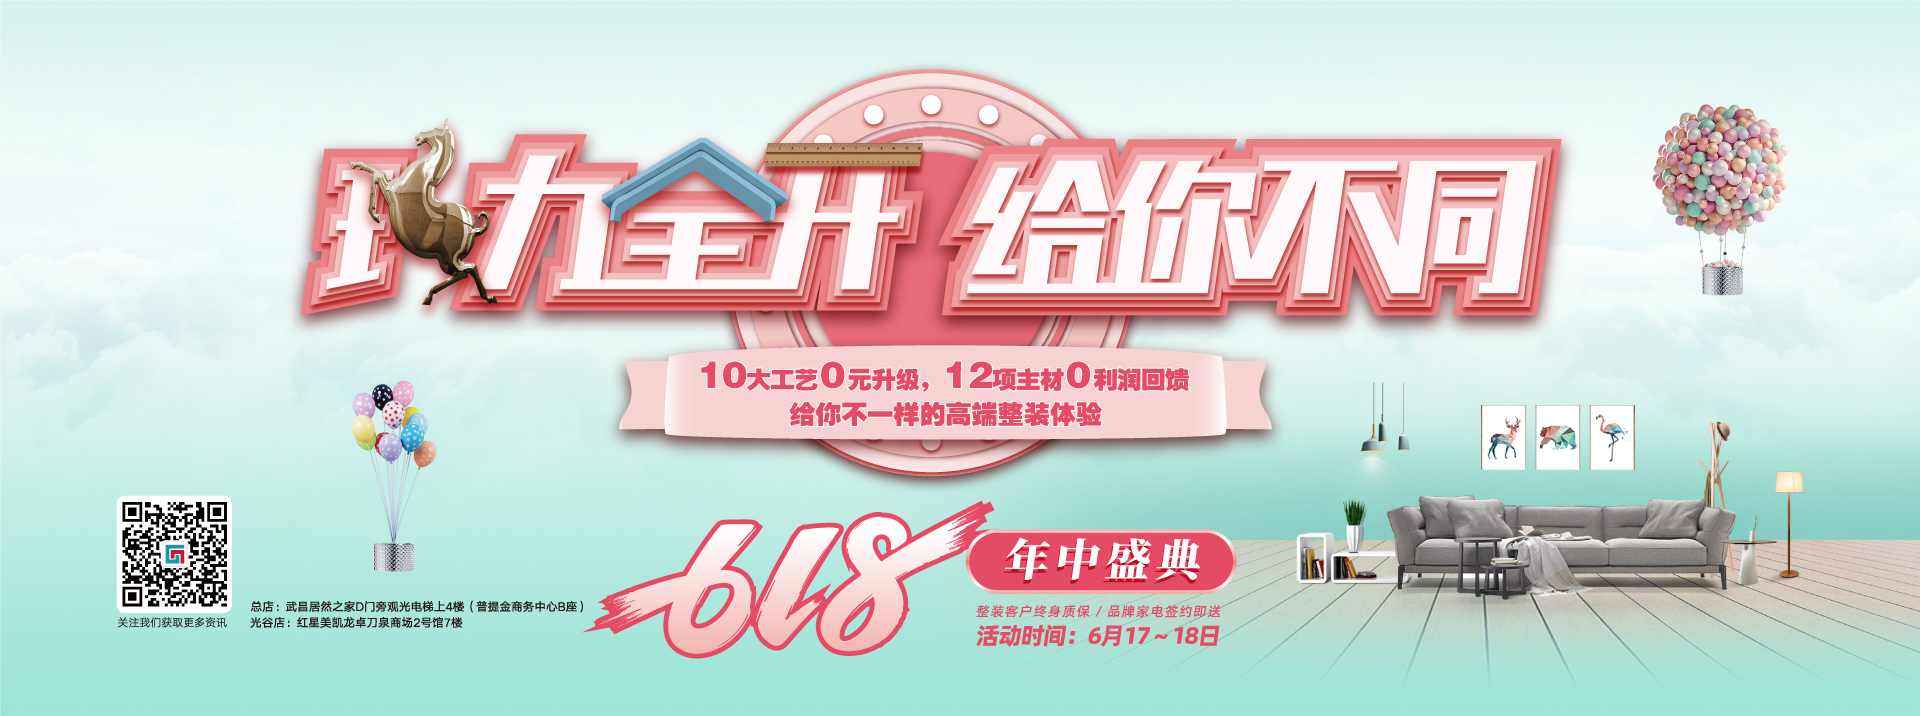 中国屄视频毛茸茸六西格玛装饰活动海报